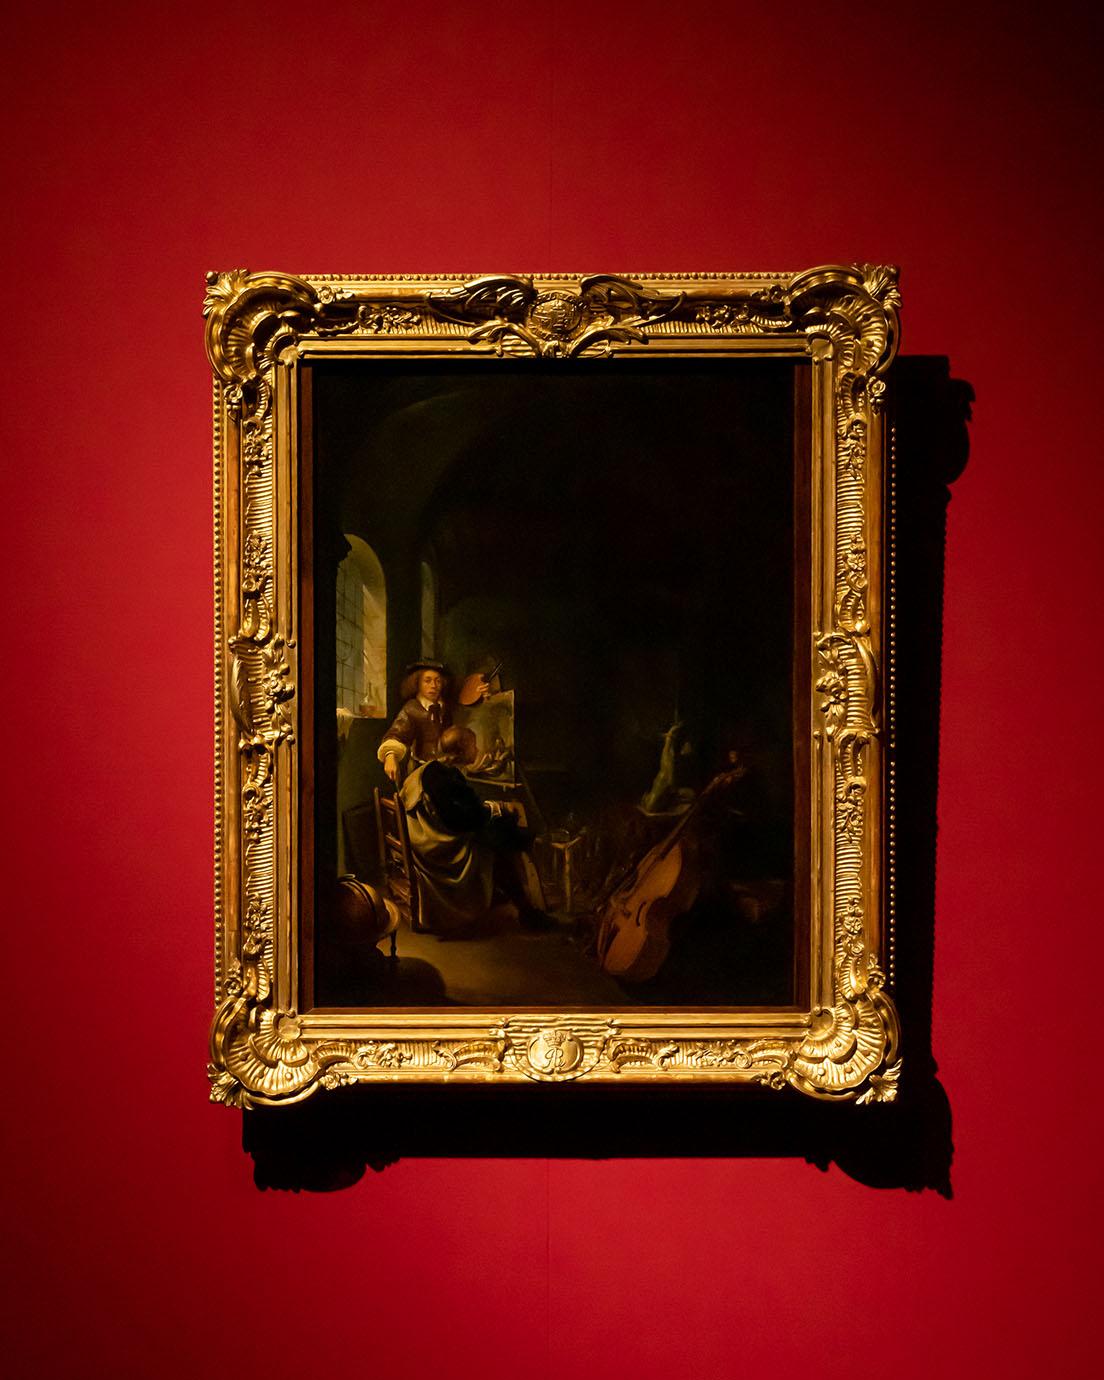 フランス・ファン・ミーリス《画家のアトリエ》（1655～57年頃）。フェルメールと同時代の画家の作品。絵を描くときのモチーフとした彫像や楽器が置かれている。フェルメールもこんなアトリエで制作していたのかもしれない。